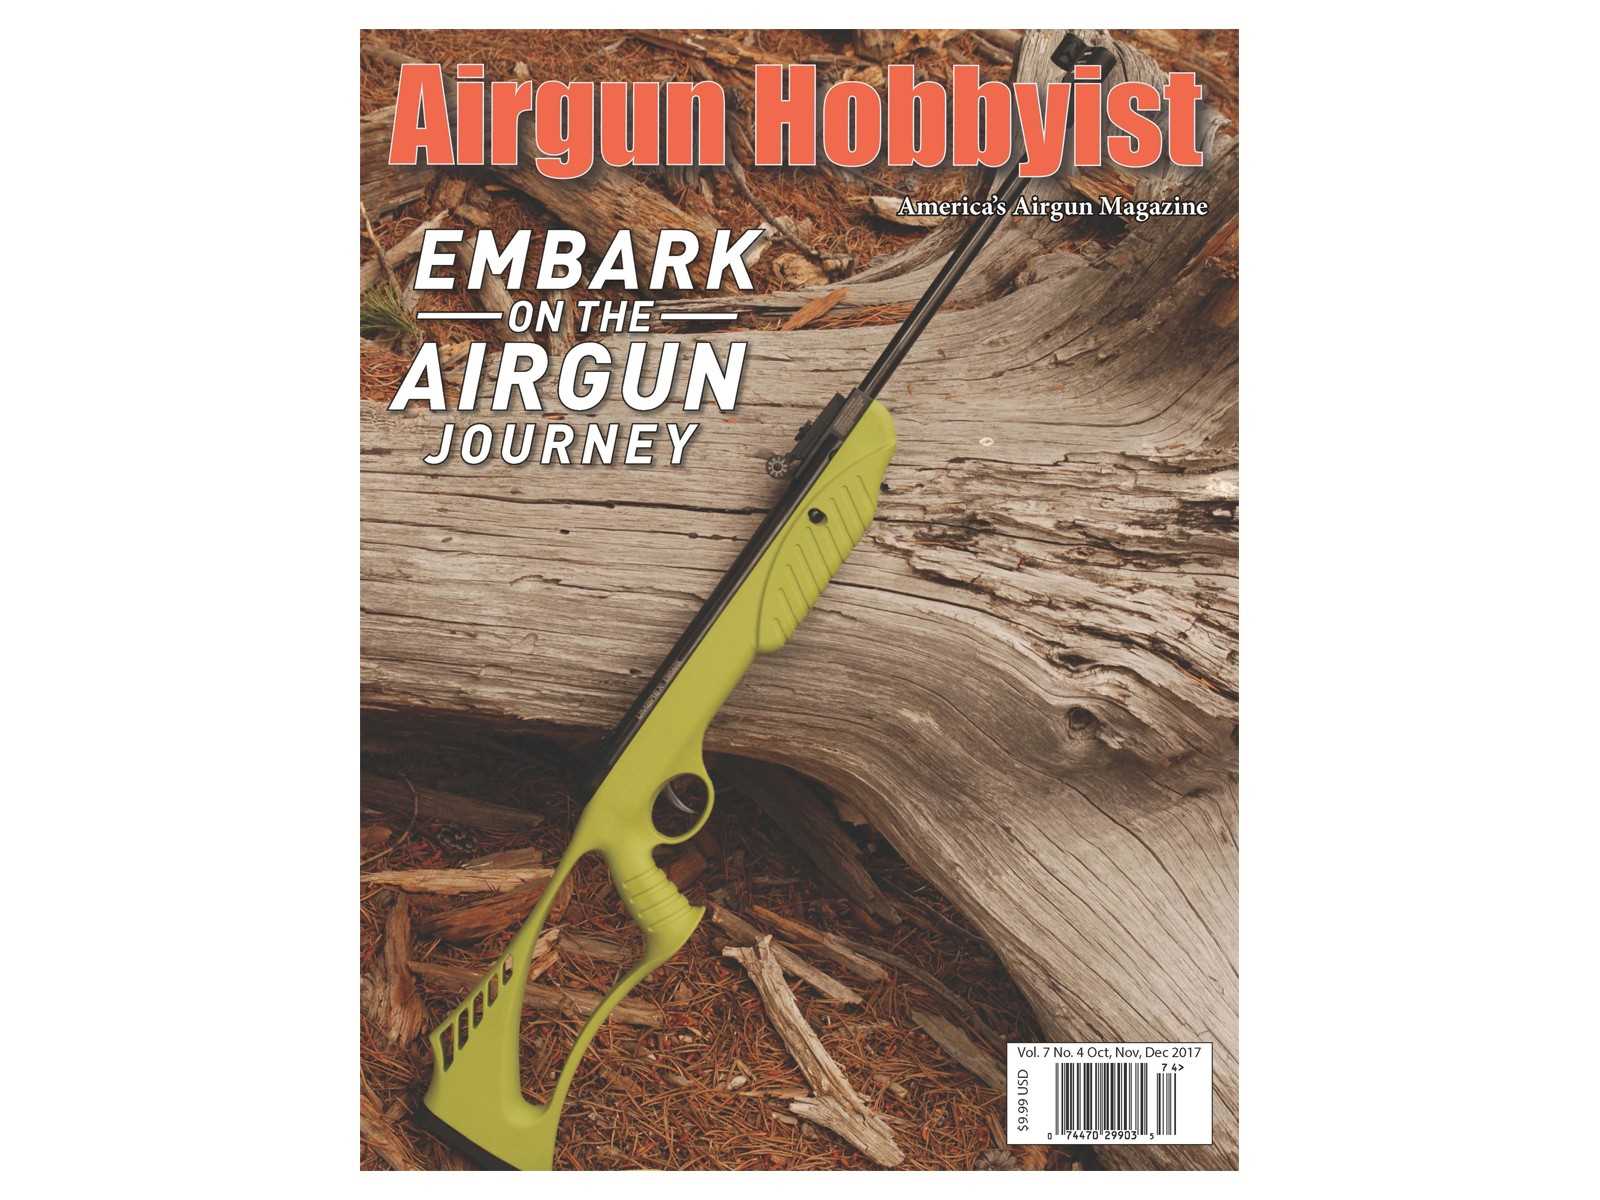 Airgun Hobbyist Magazine, Oct/Nov/Dec 2017 Issue